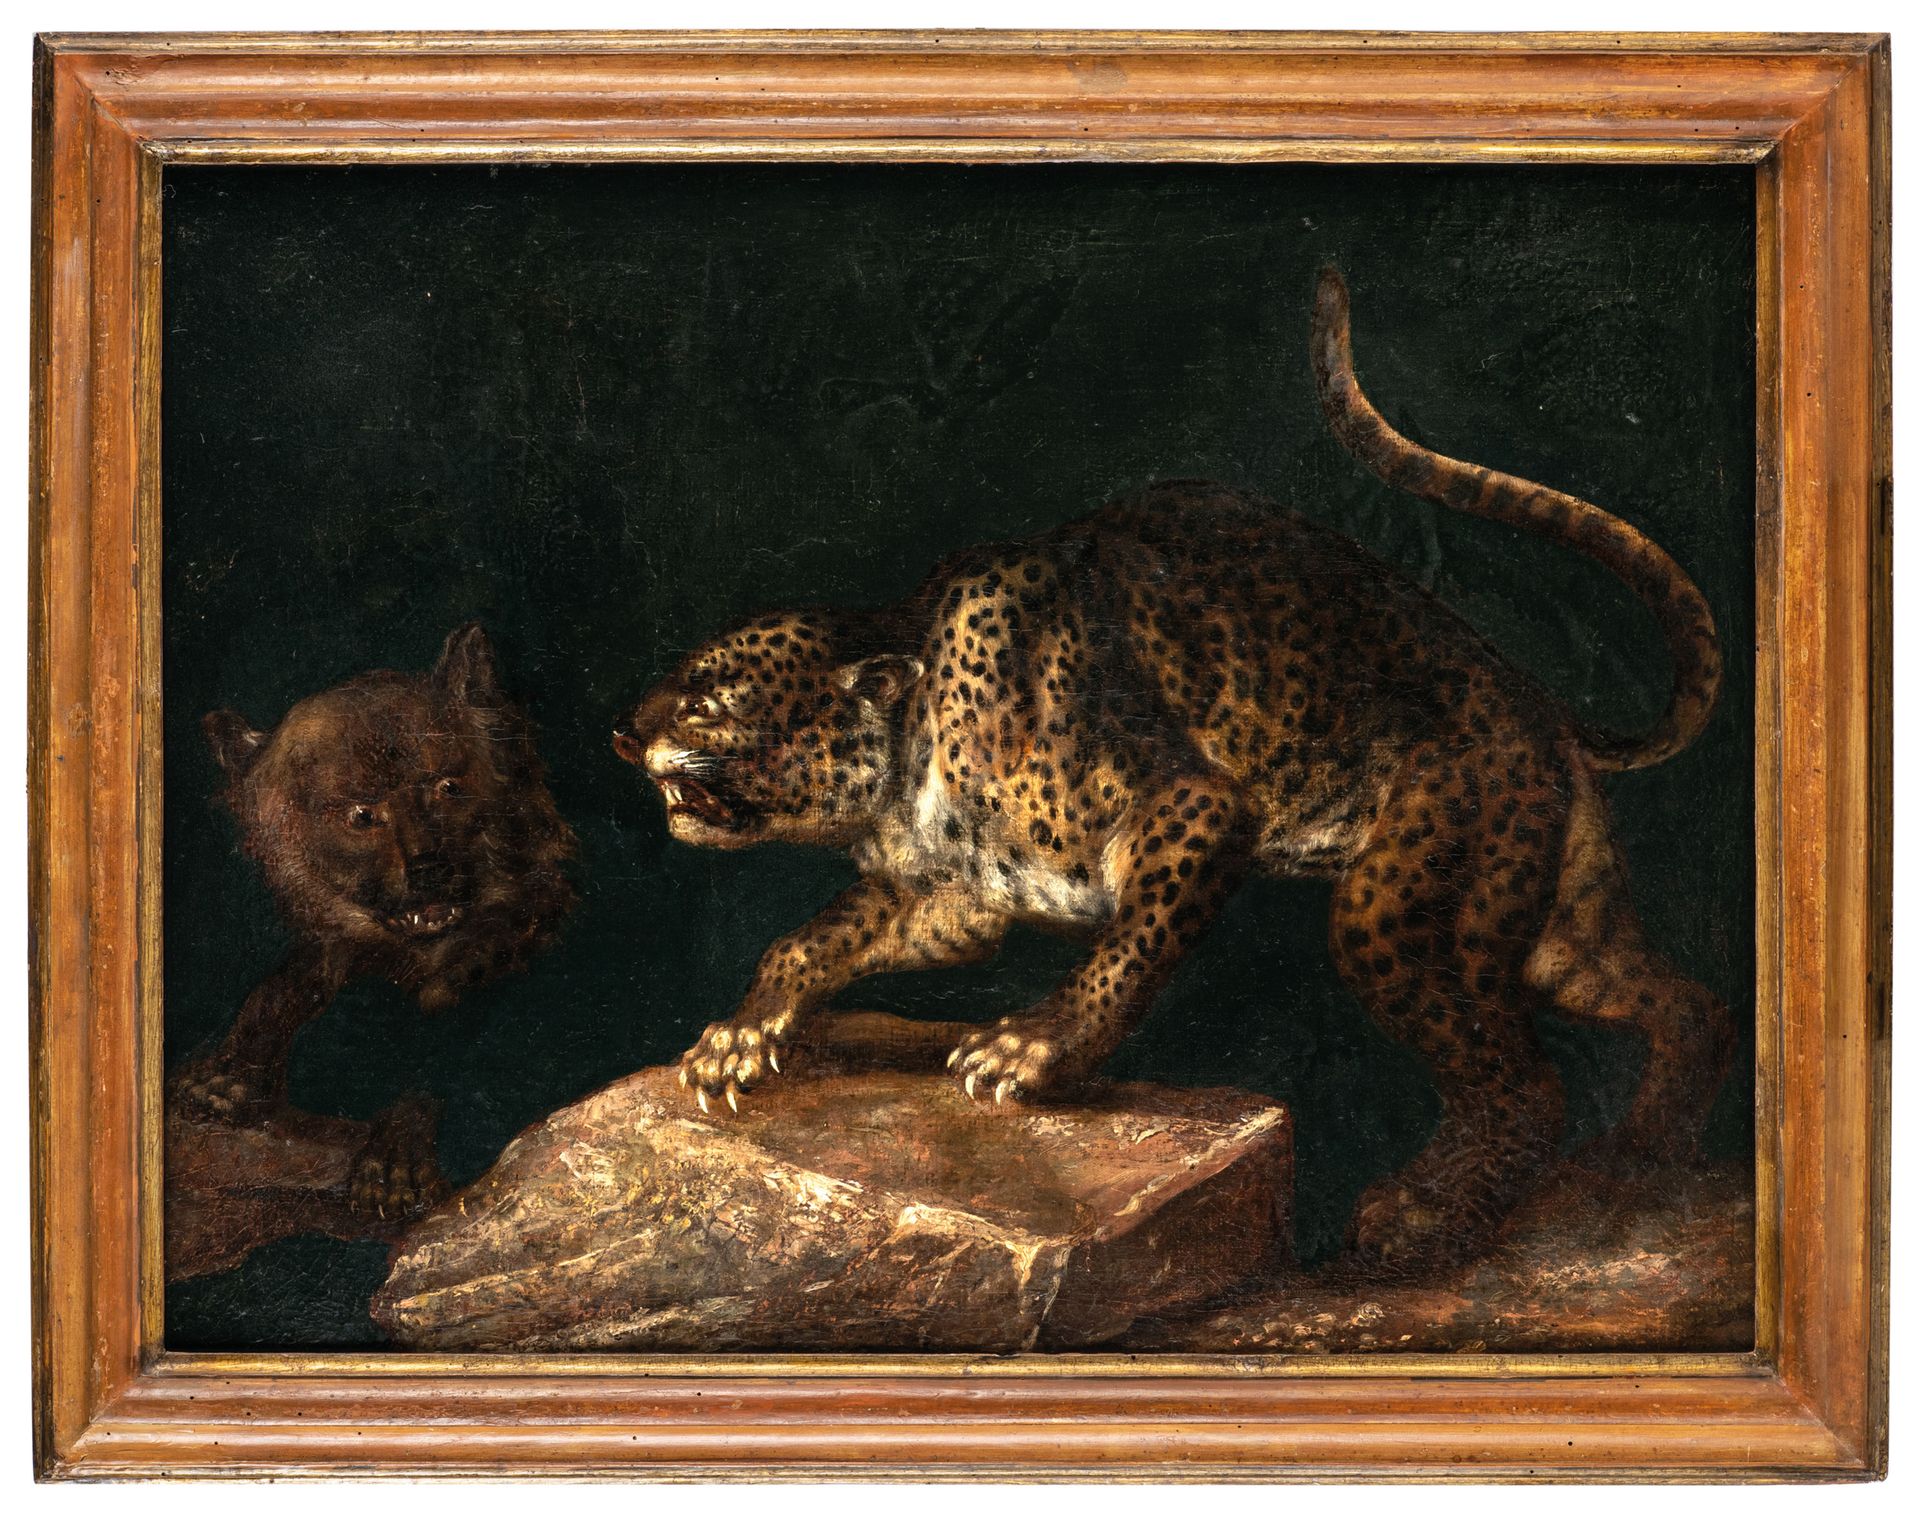 PITTORE DEL XVIII-XIX SECOLO Animali
Olio su tela, cm 55X73